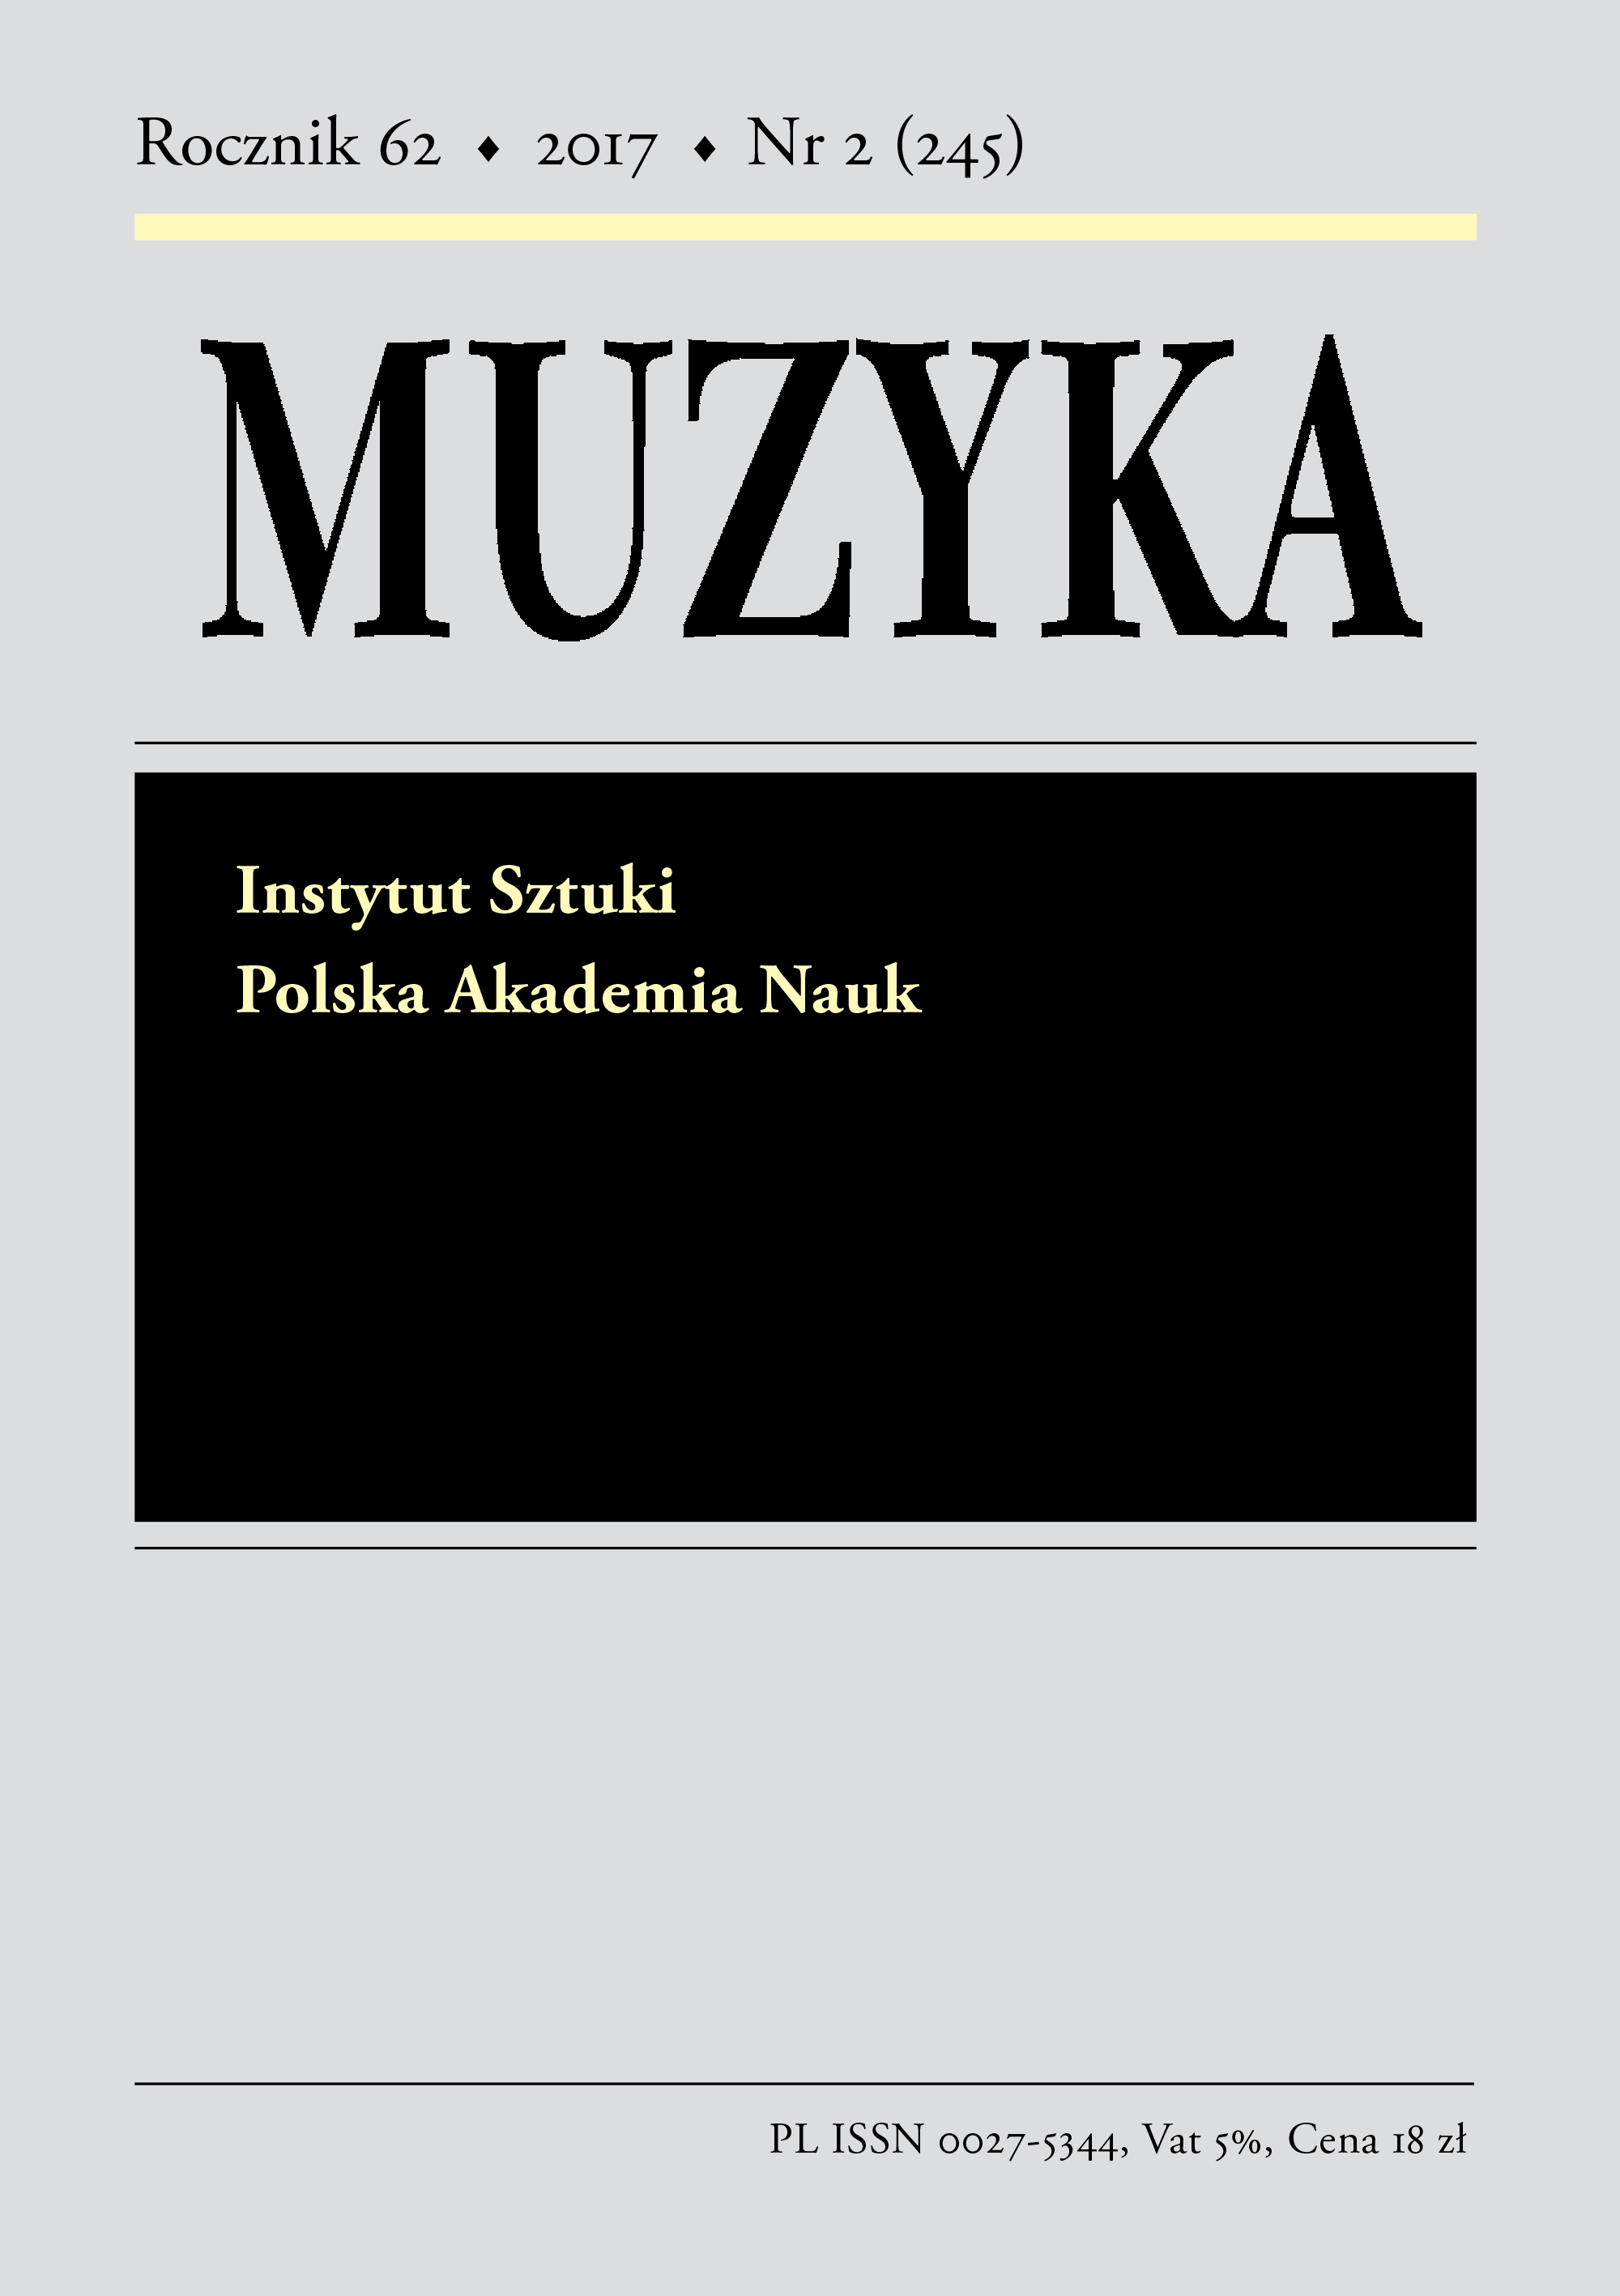 "Zabytki muzyczne w zbiorach Muzeum Uniwersytetu Jagiellońskiego. Katalog, konteksty, album", red. Renata Suchowiejko, Kraków 2016